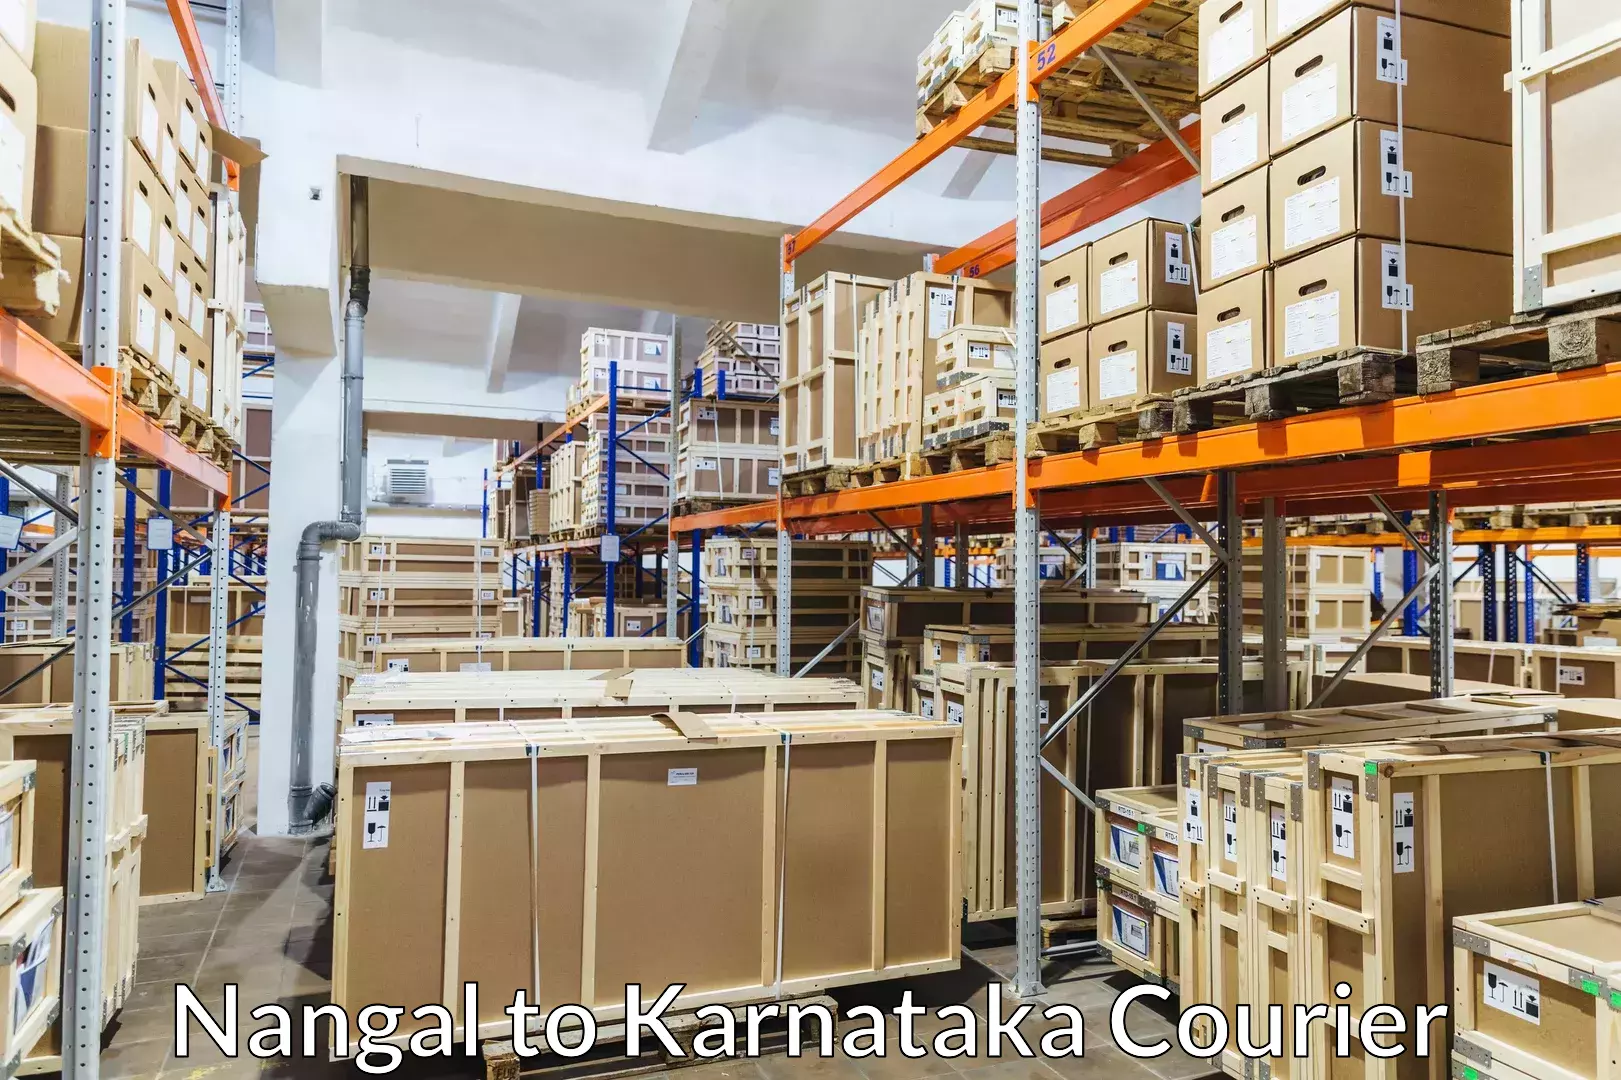 Baggage delivery solutions Nangal to Karnataka